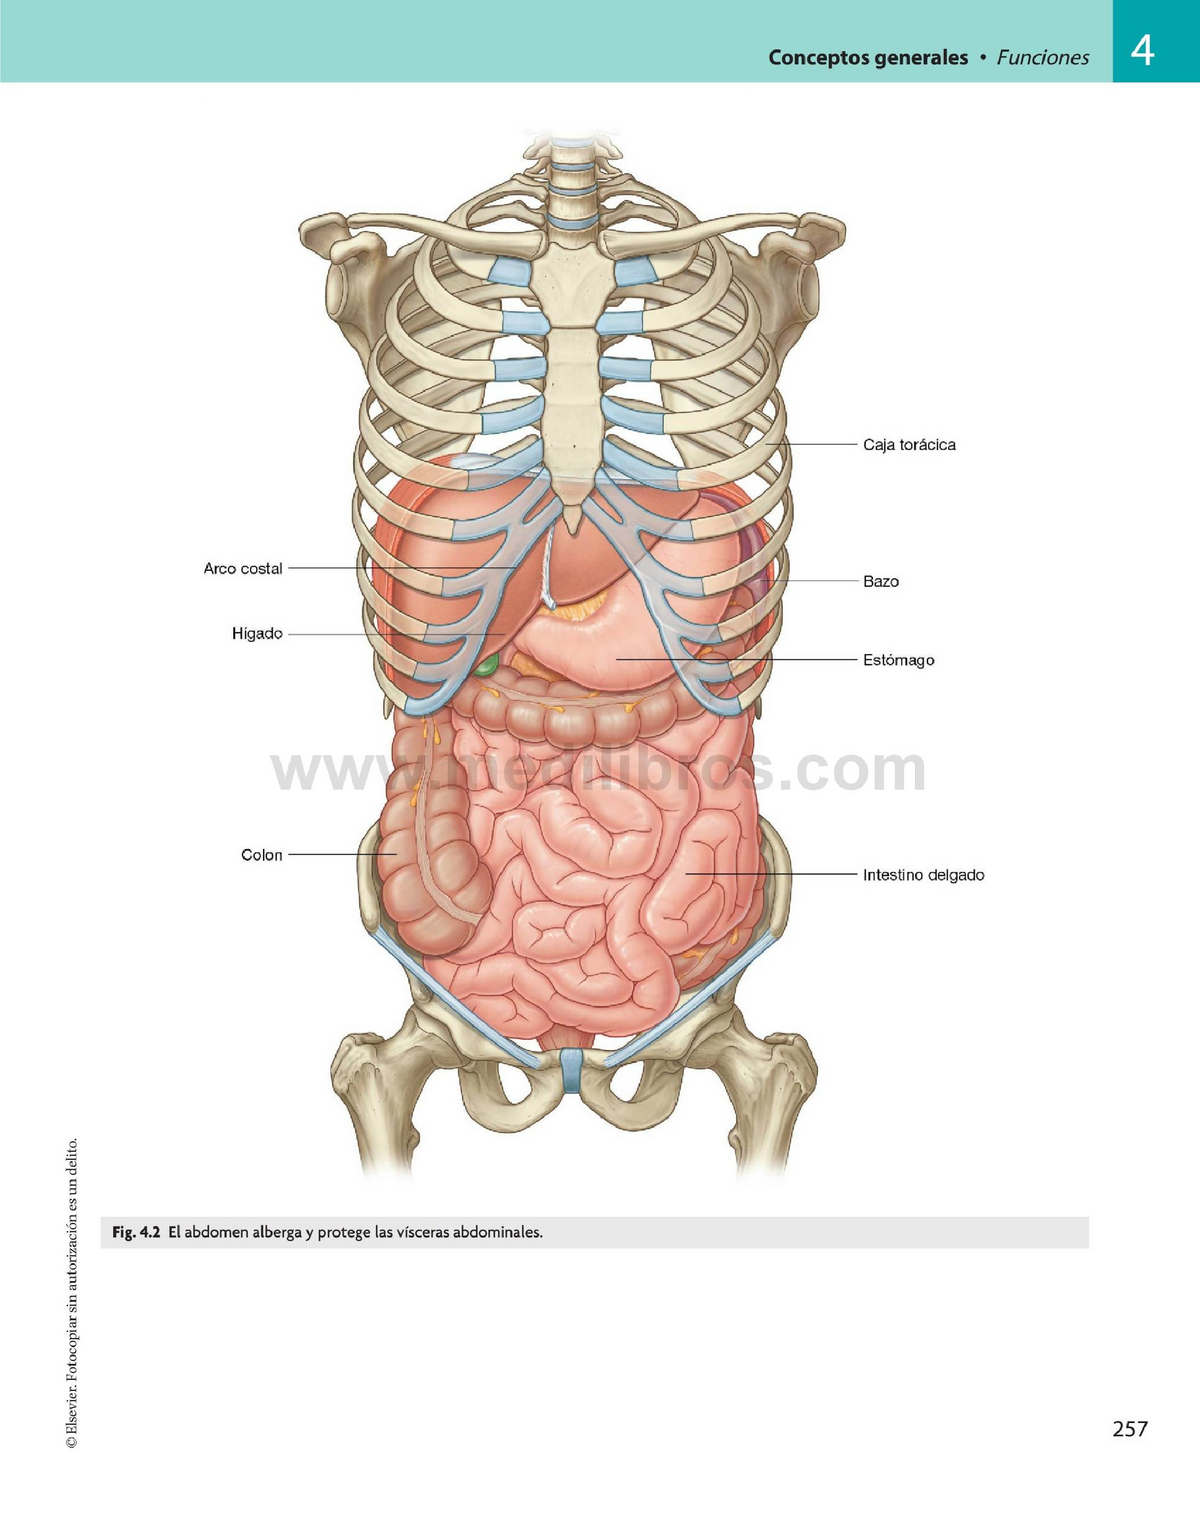 Беременность болит под правым ребром. Анатомия брюшной полости с ребрами. Анатомия человека внутренние органы брюшной полости. Схема расположения органов человека в брюшной полости. Анатомический атлас органы брюшной полости.